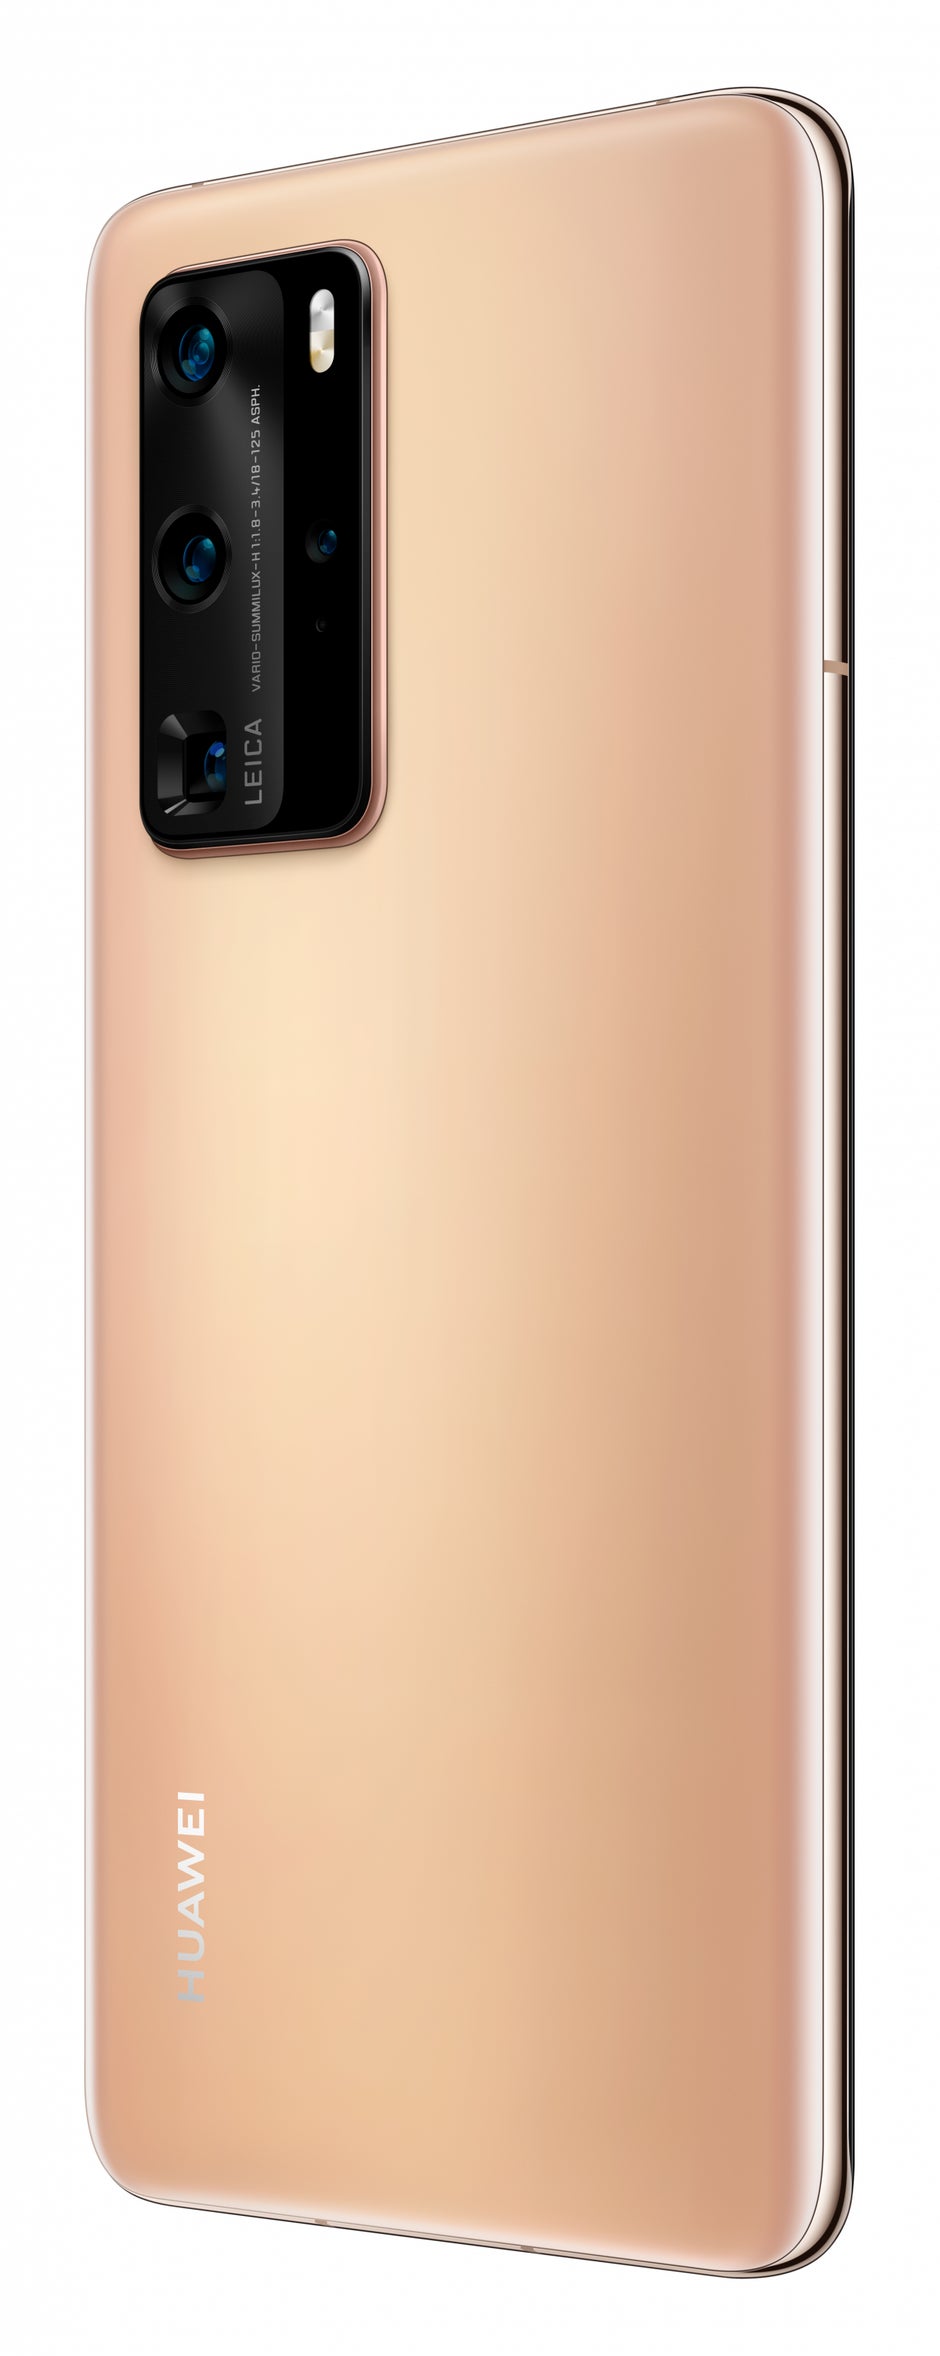 Huawei P40 Pro in Blush Gold. (Bild: Huawei)